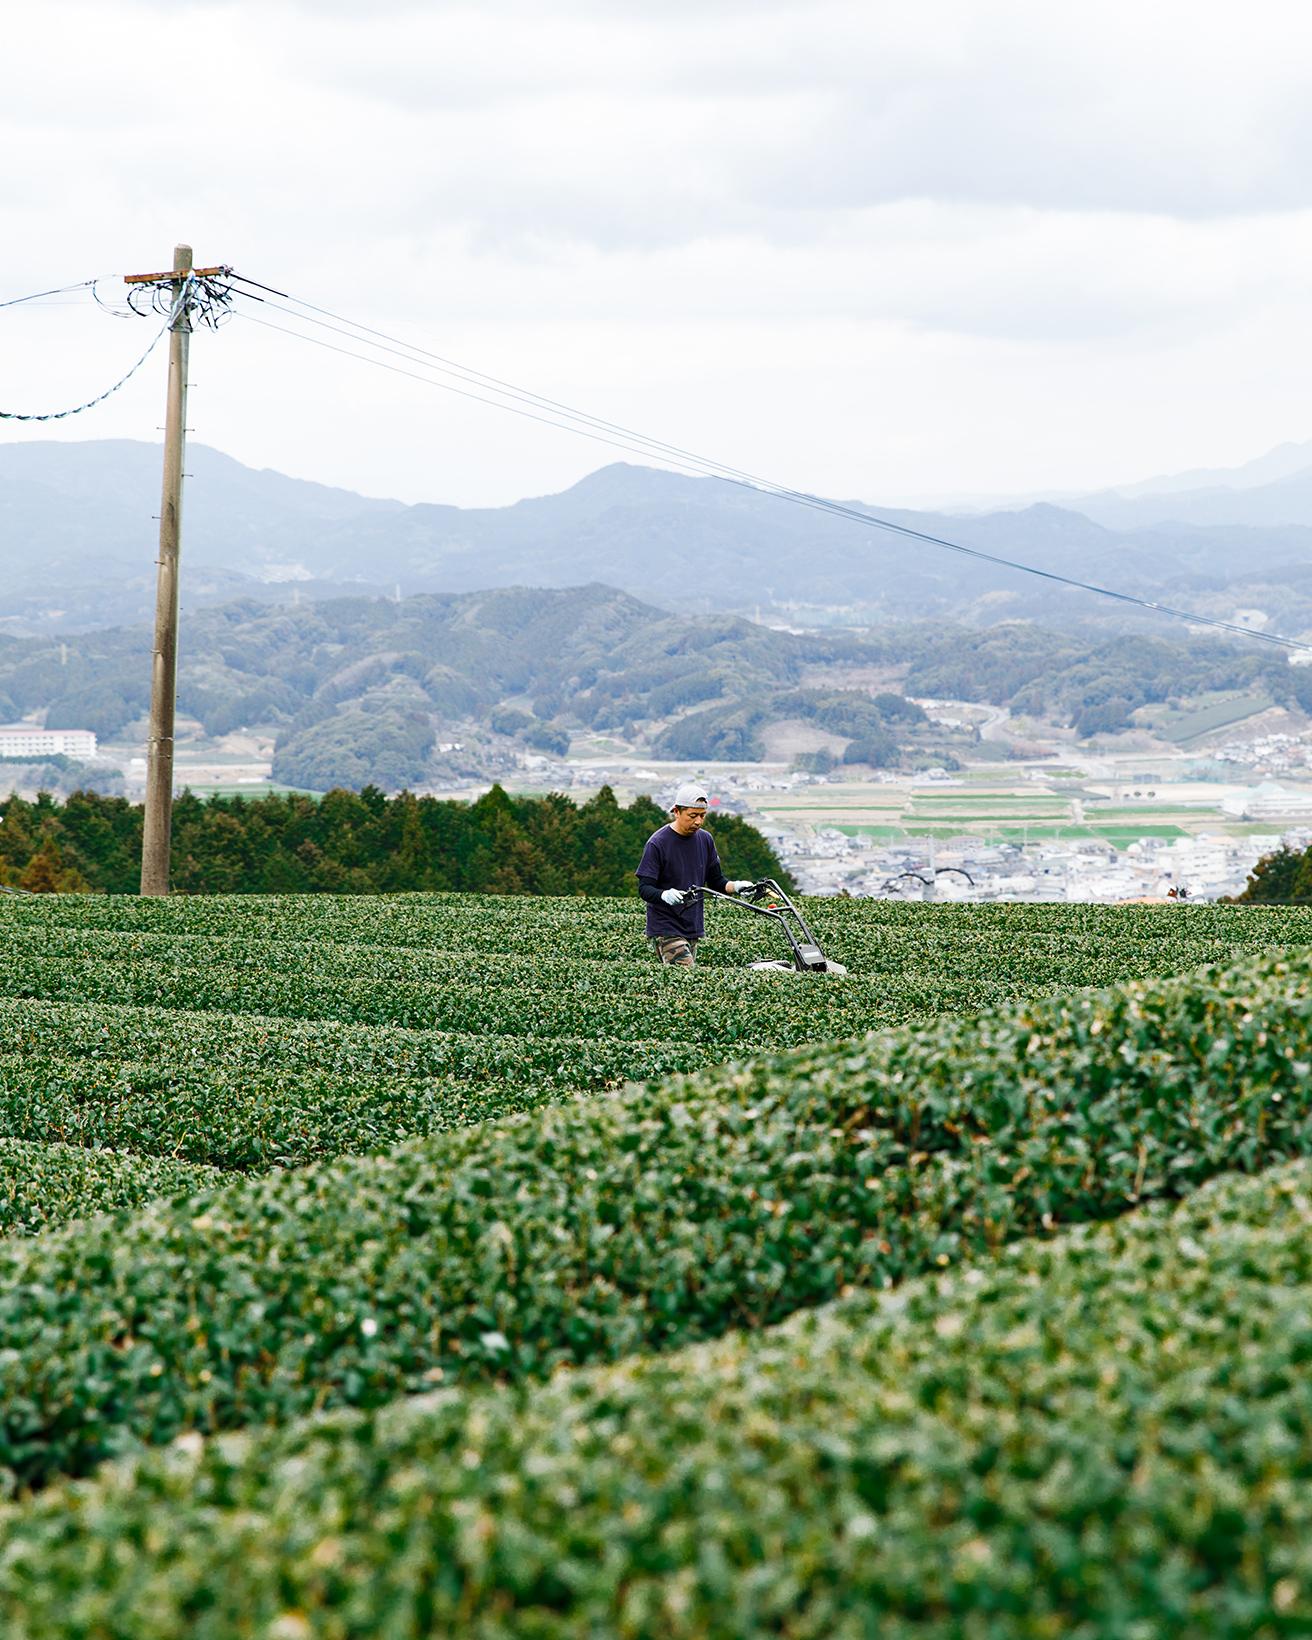 〈副島園〉は3代続くお茶農家。土づくりからこだわり、無農薬のお茶を栽培している。2021年には〈和多屋別荘〉内に副島園本店を開業した。